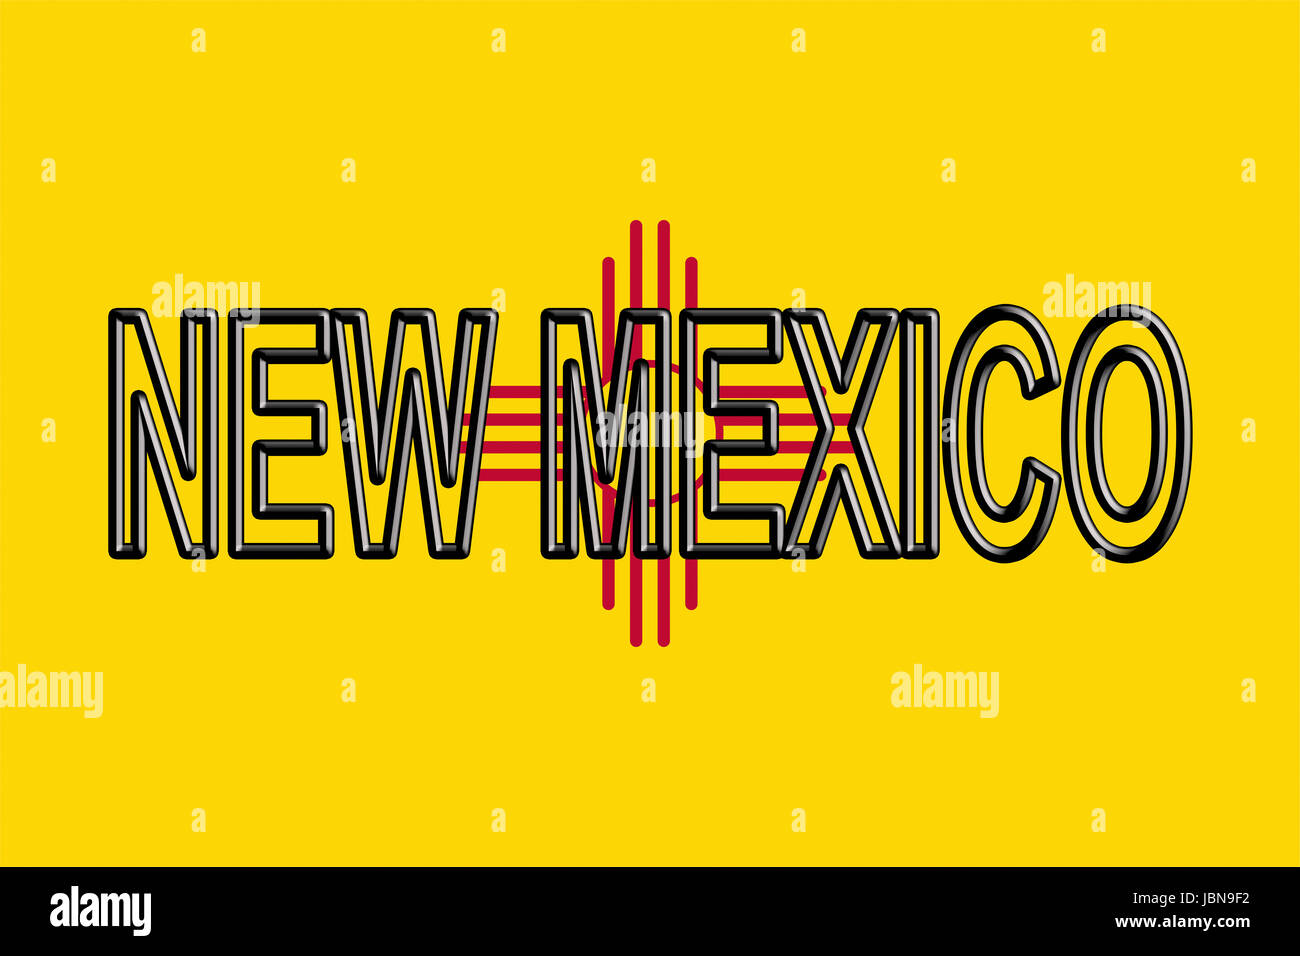 Ilustración de la bandera del estado de Nuevo México en los Estados Unidos con el estado escrito en la bandera. Foto de stock